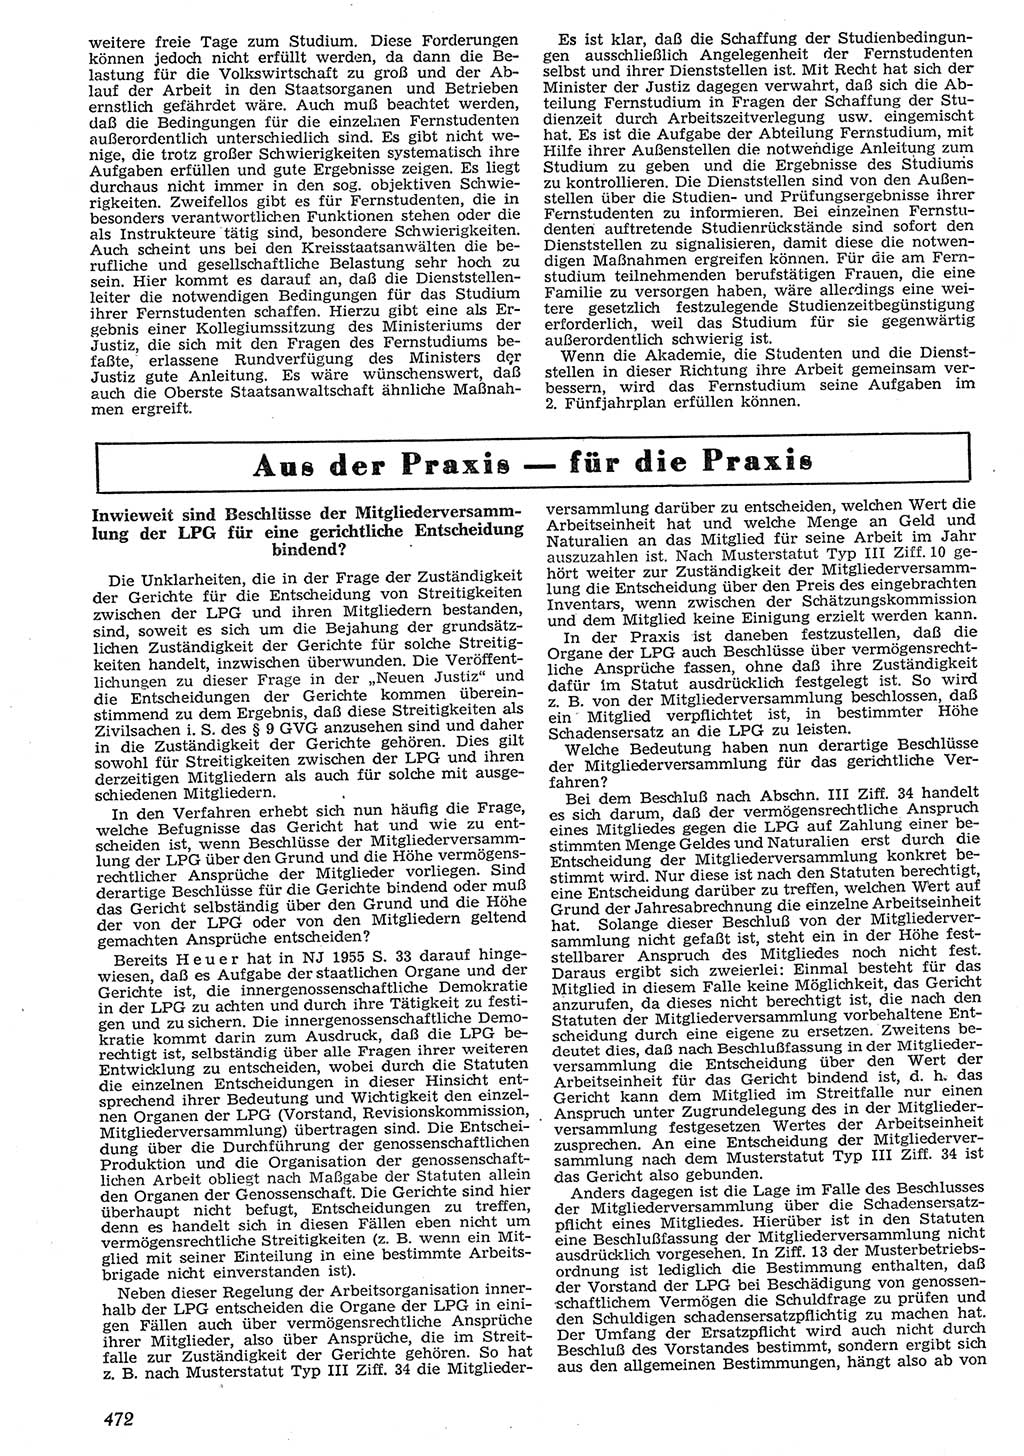 Neue Justiz (NJ), Zeitschrift für Recht und Rechtswissenschaft [Deutsche Demokratische Republik (DDR)], 10. Jahrgang 1956, Seite 472 (NJ DDR 1956, S. 472)